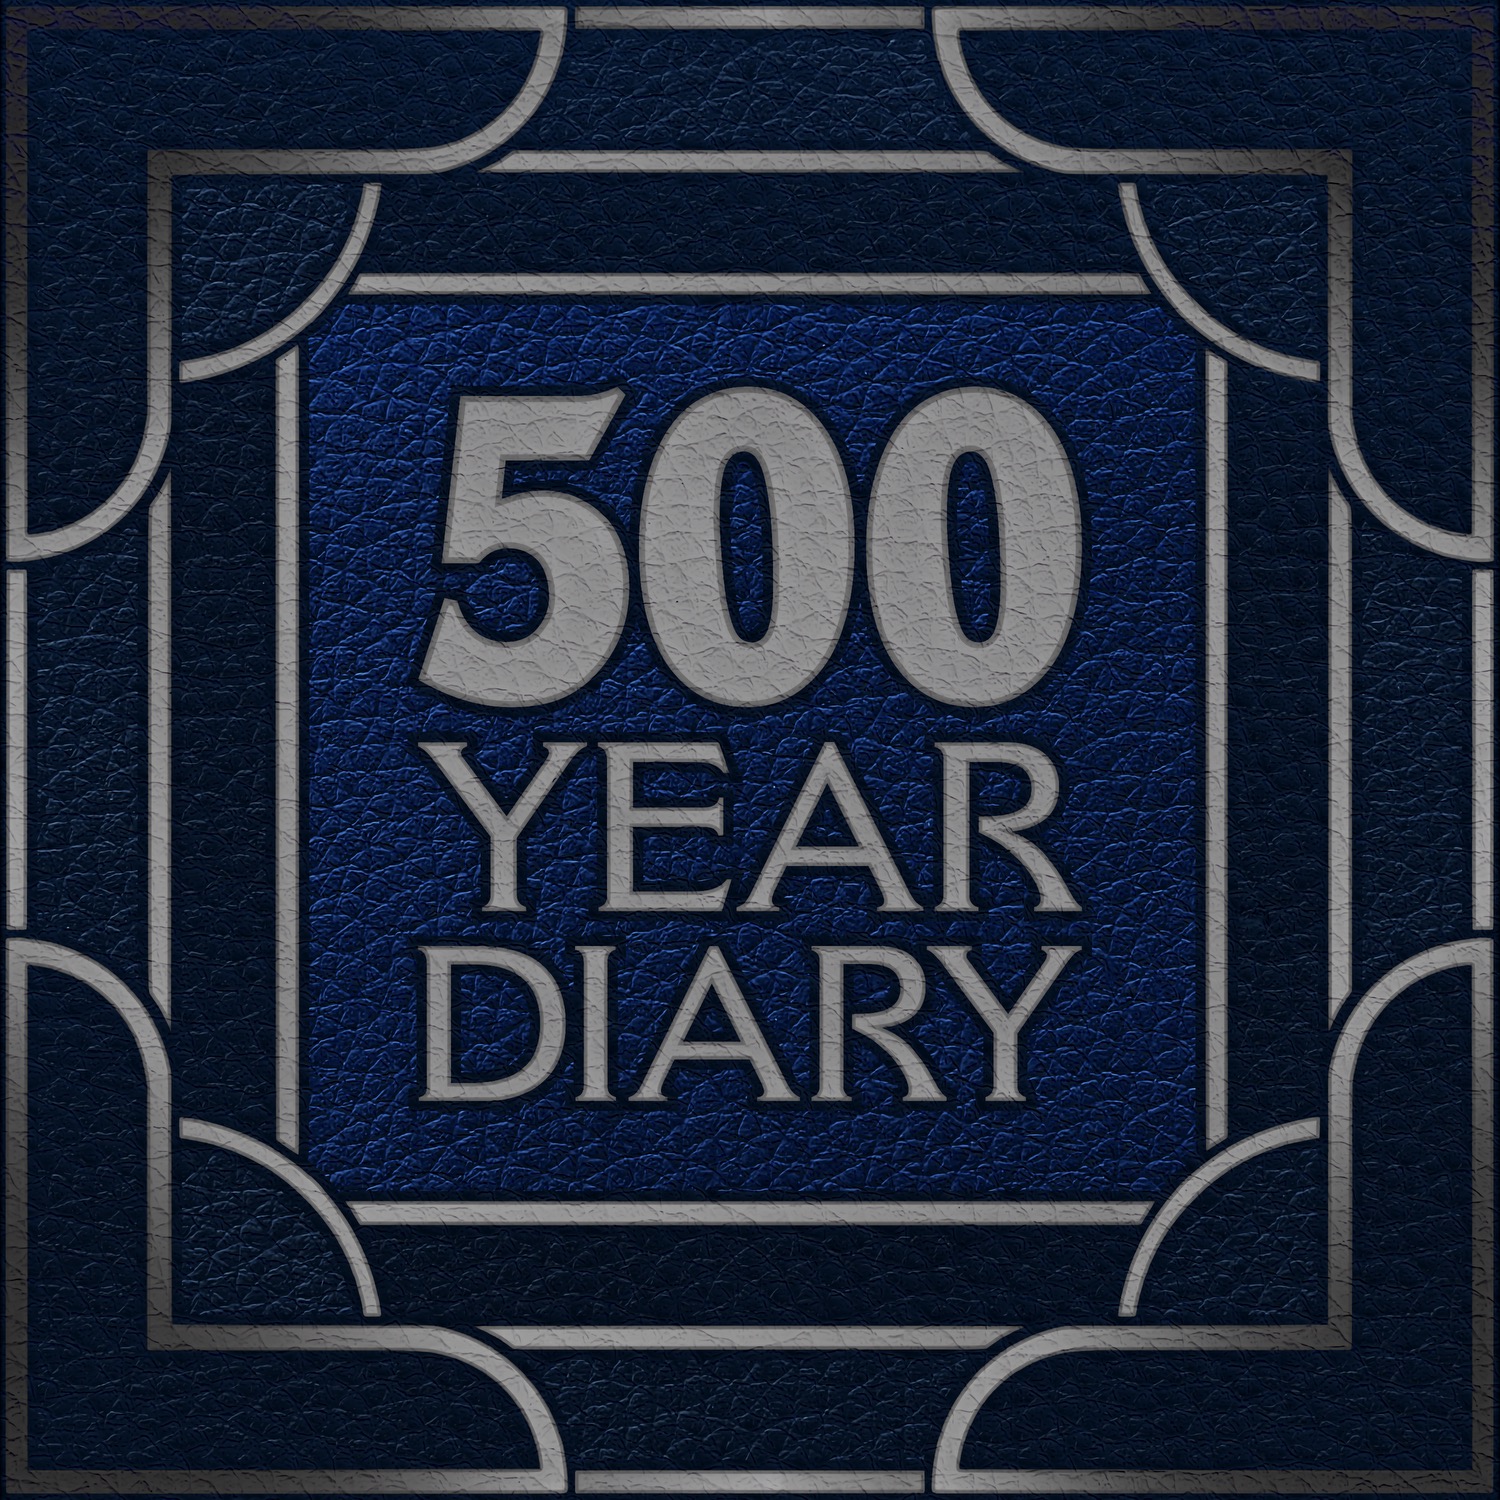 500 Year Diary logo